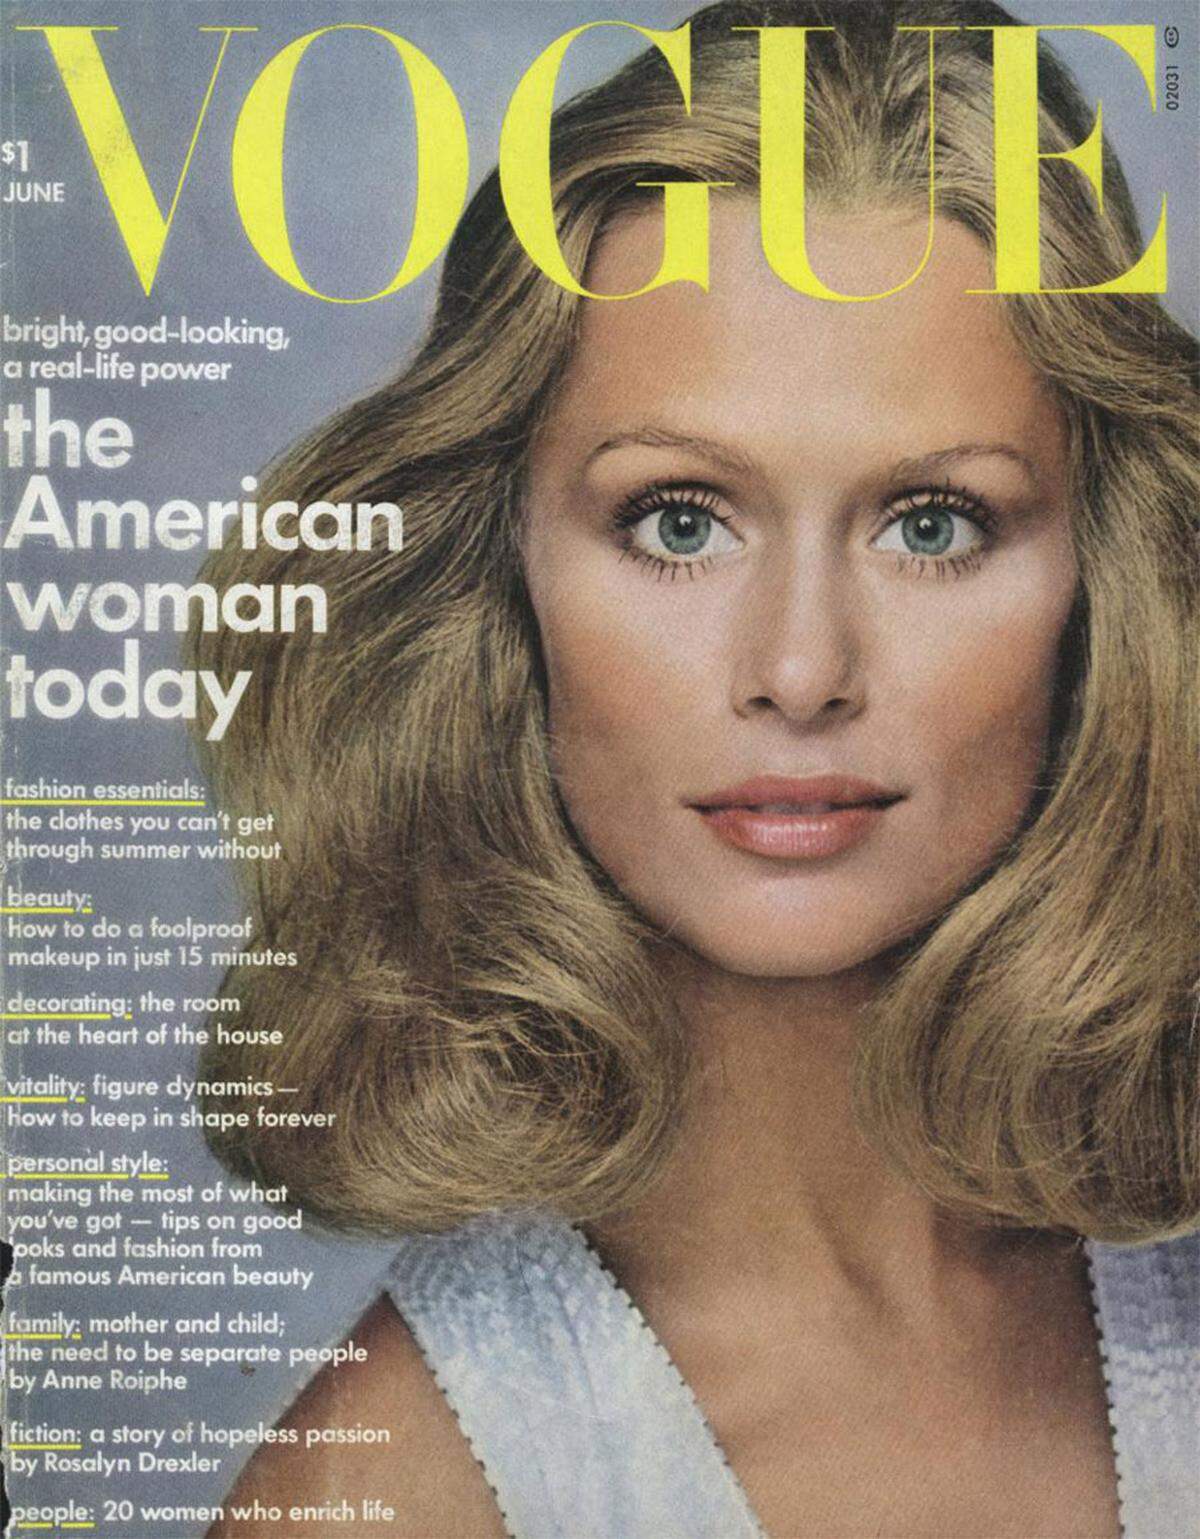 Hutton galt in den 70er-Jahren als eines der bestbezahlten und gefragtesten Models. Über 25 Mal war sie auf dem Cvoer der Vogue zu sehen. Danach versuchte sie sich als Schauspielerin, ehe sie wieder zur Modeindustrie zurückkehrte. Damit tut sie es anderen zeitlos schönen Supermodels gleich.